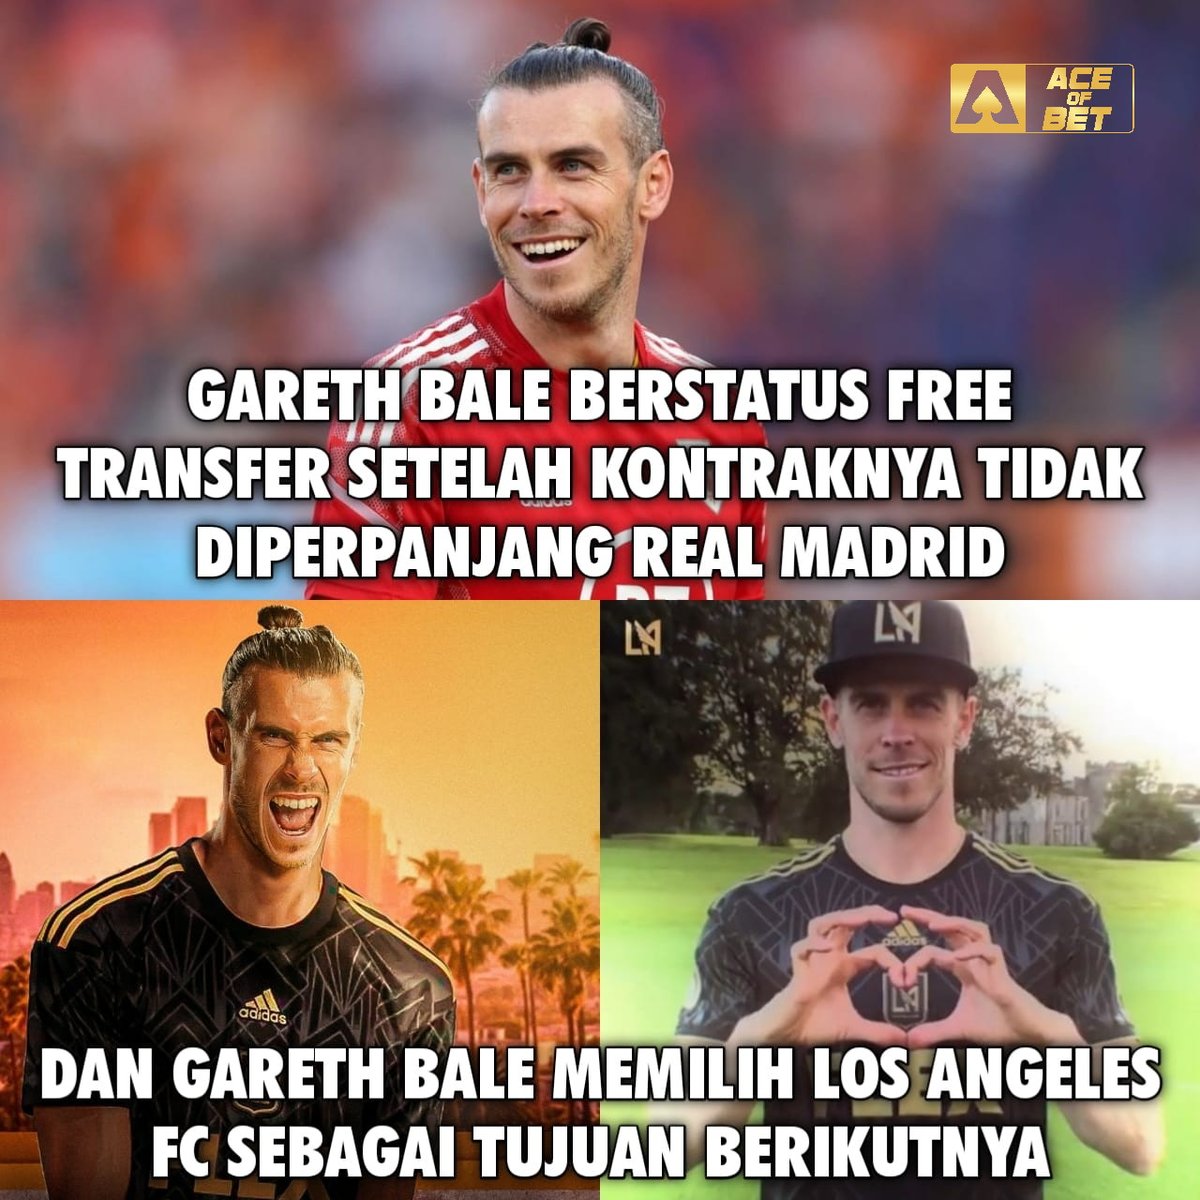 Tinggalkan Real Madrid, Gareth Bale pindah ke MLS. Gabung ke Los Angeles FC. 🤙